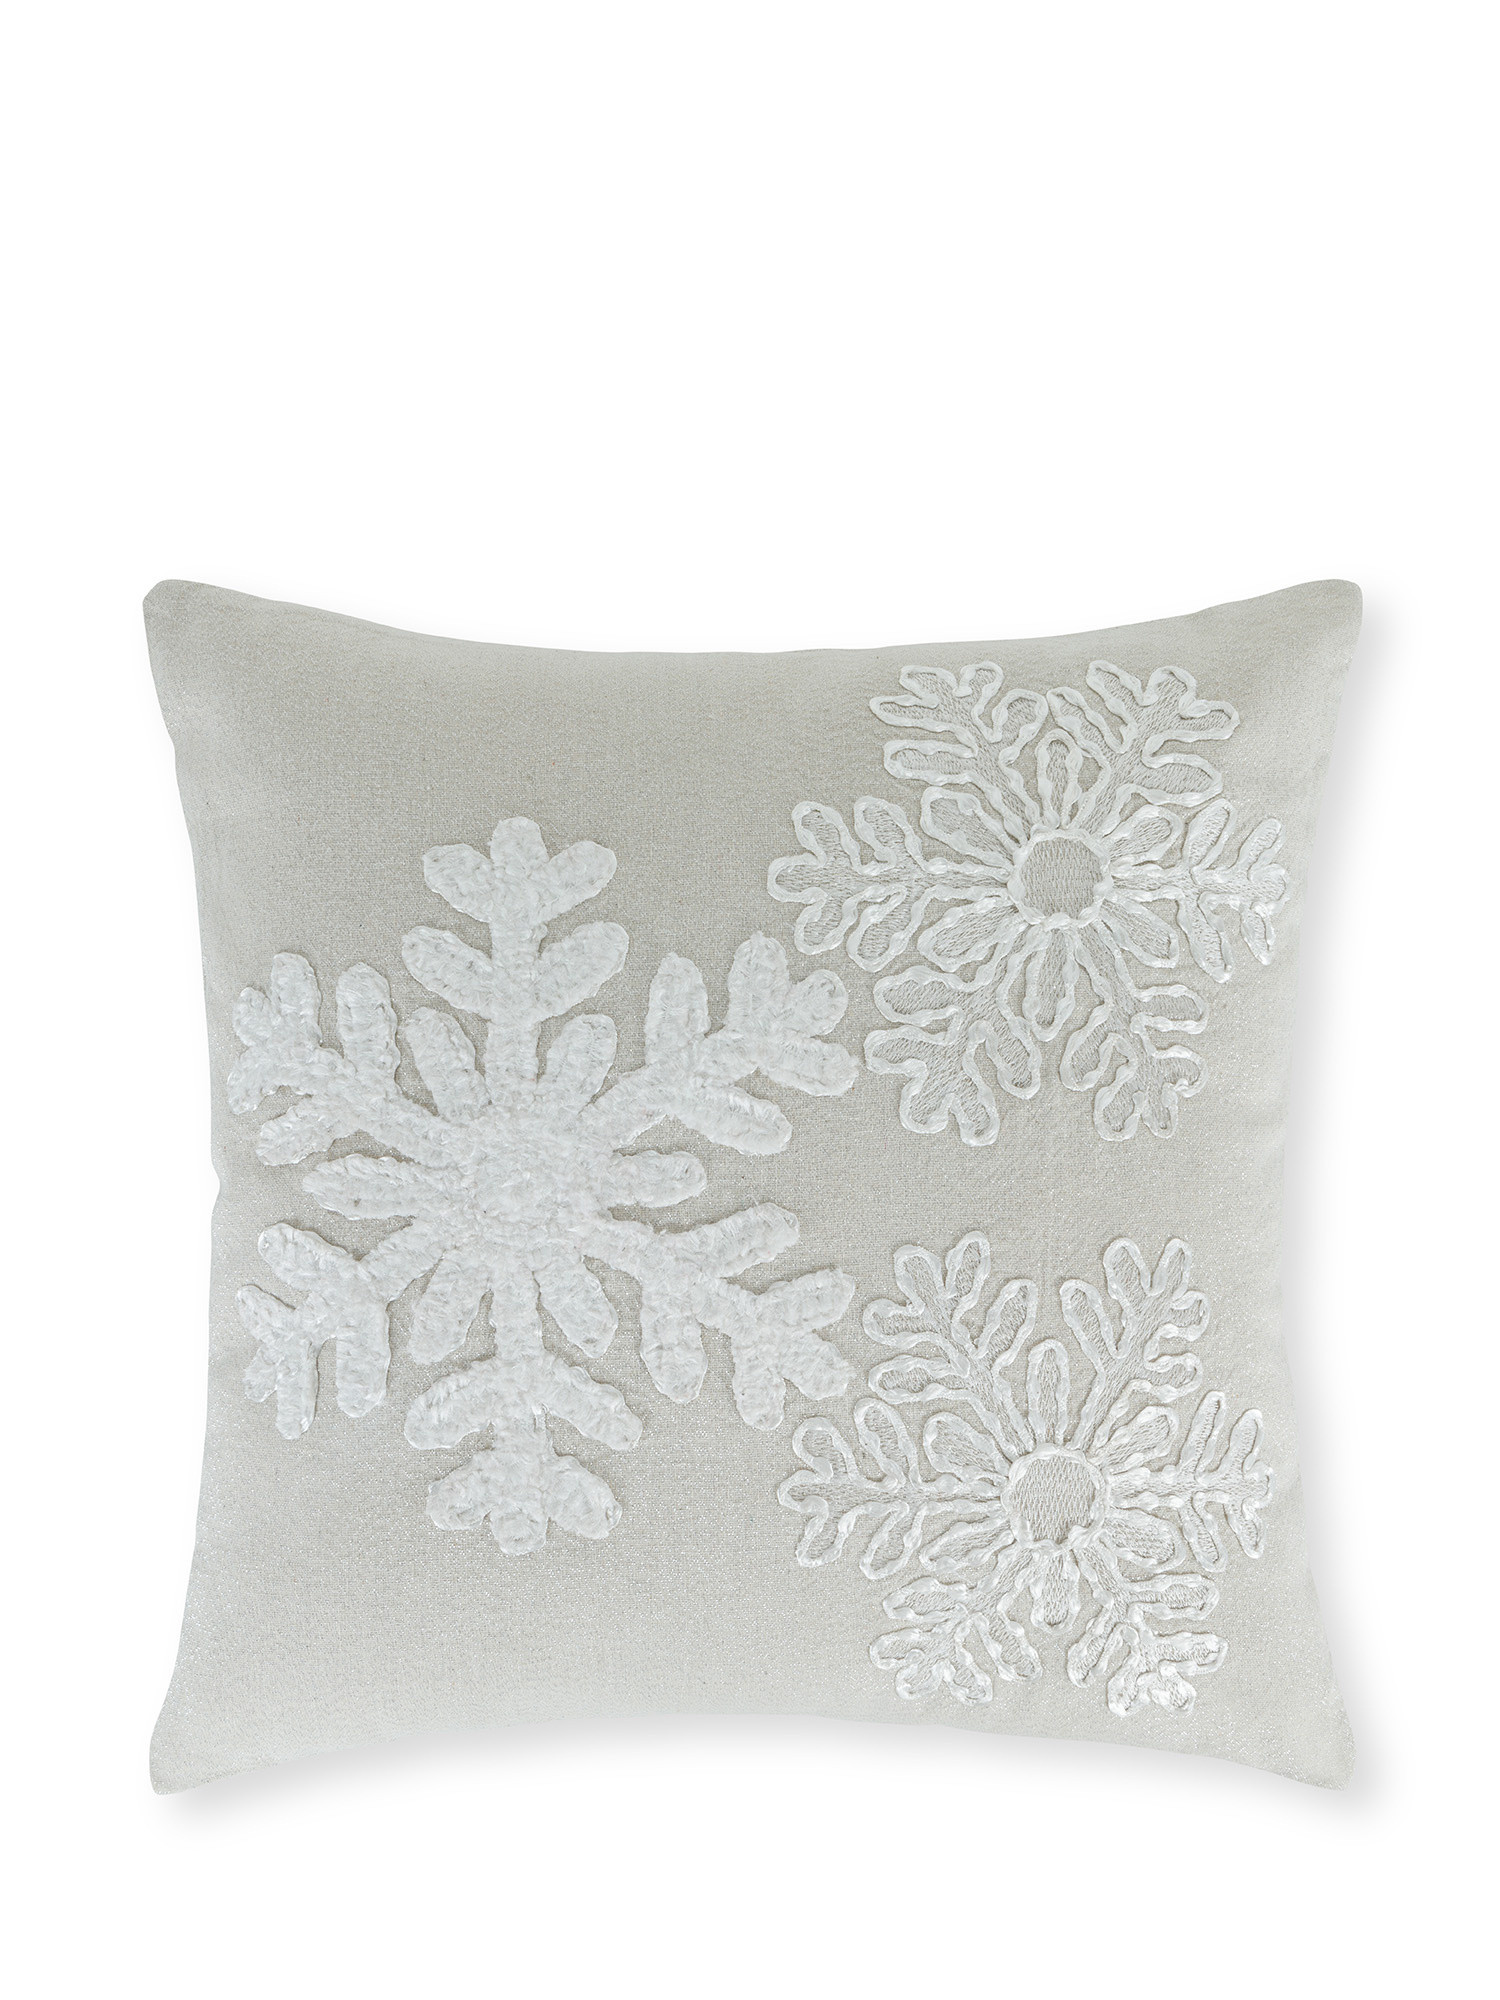 Cuscino con motivo a rilievo fiocchi di neve 45x45 cm, Bianco, large image number 0